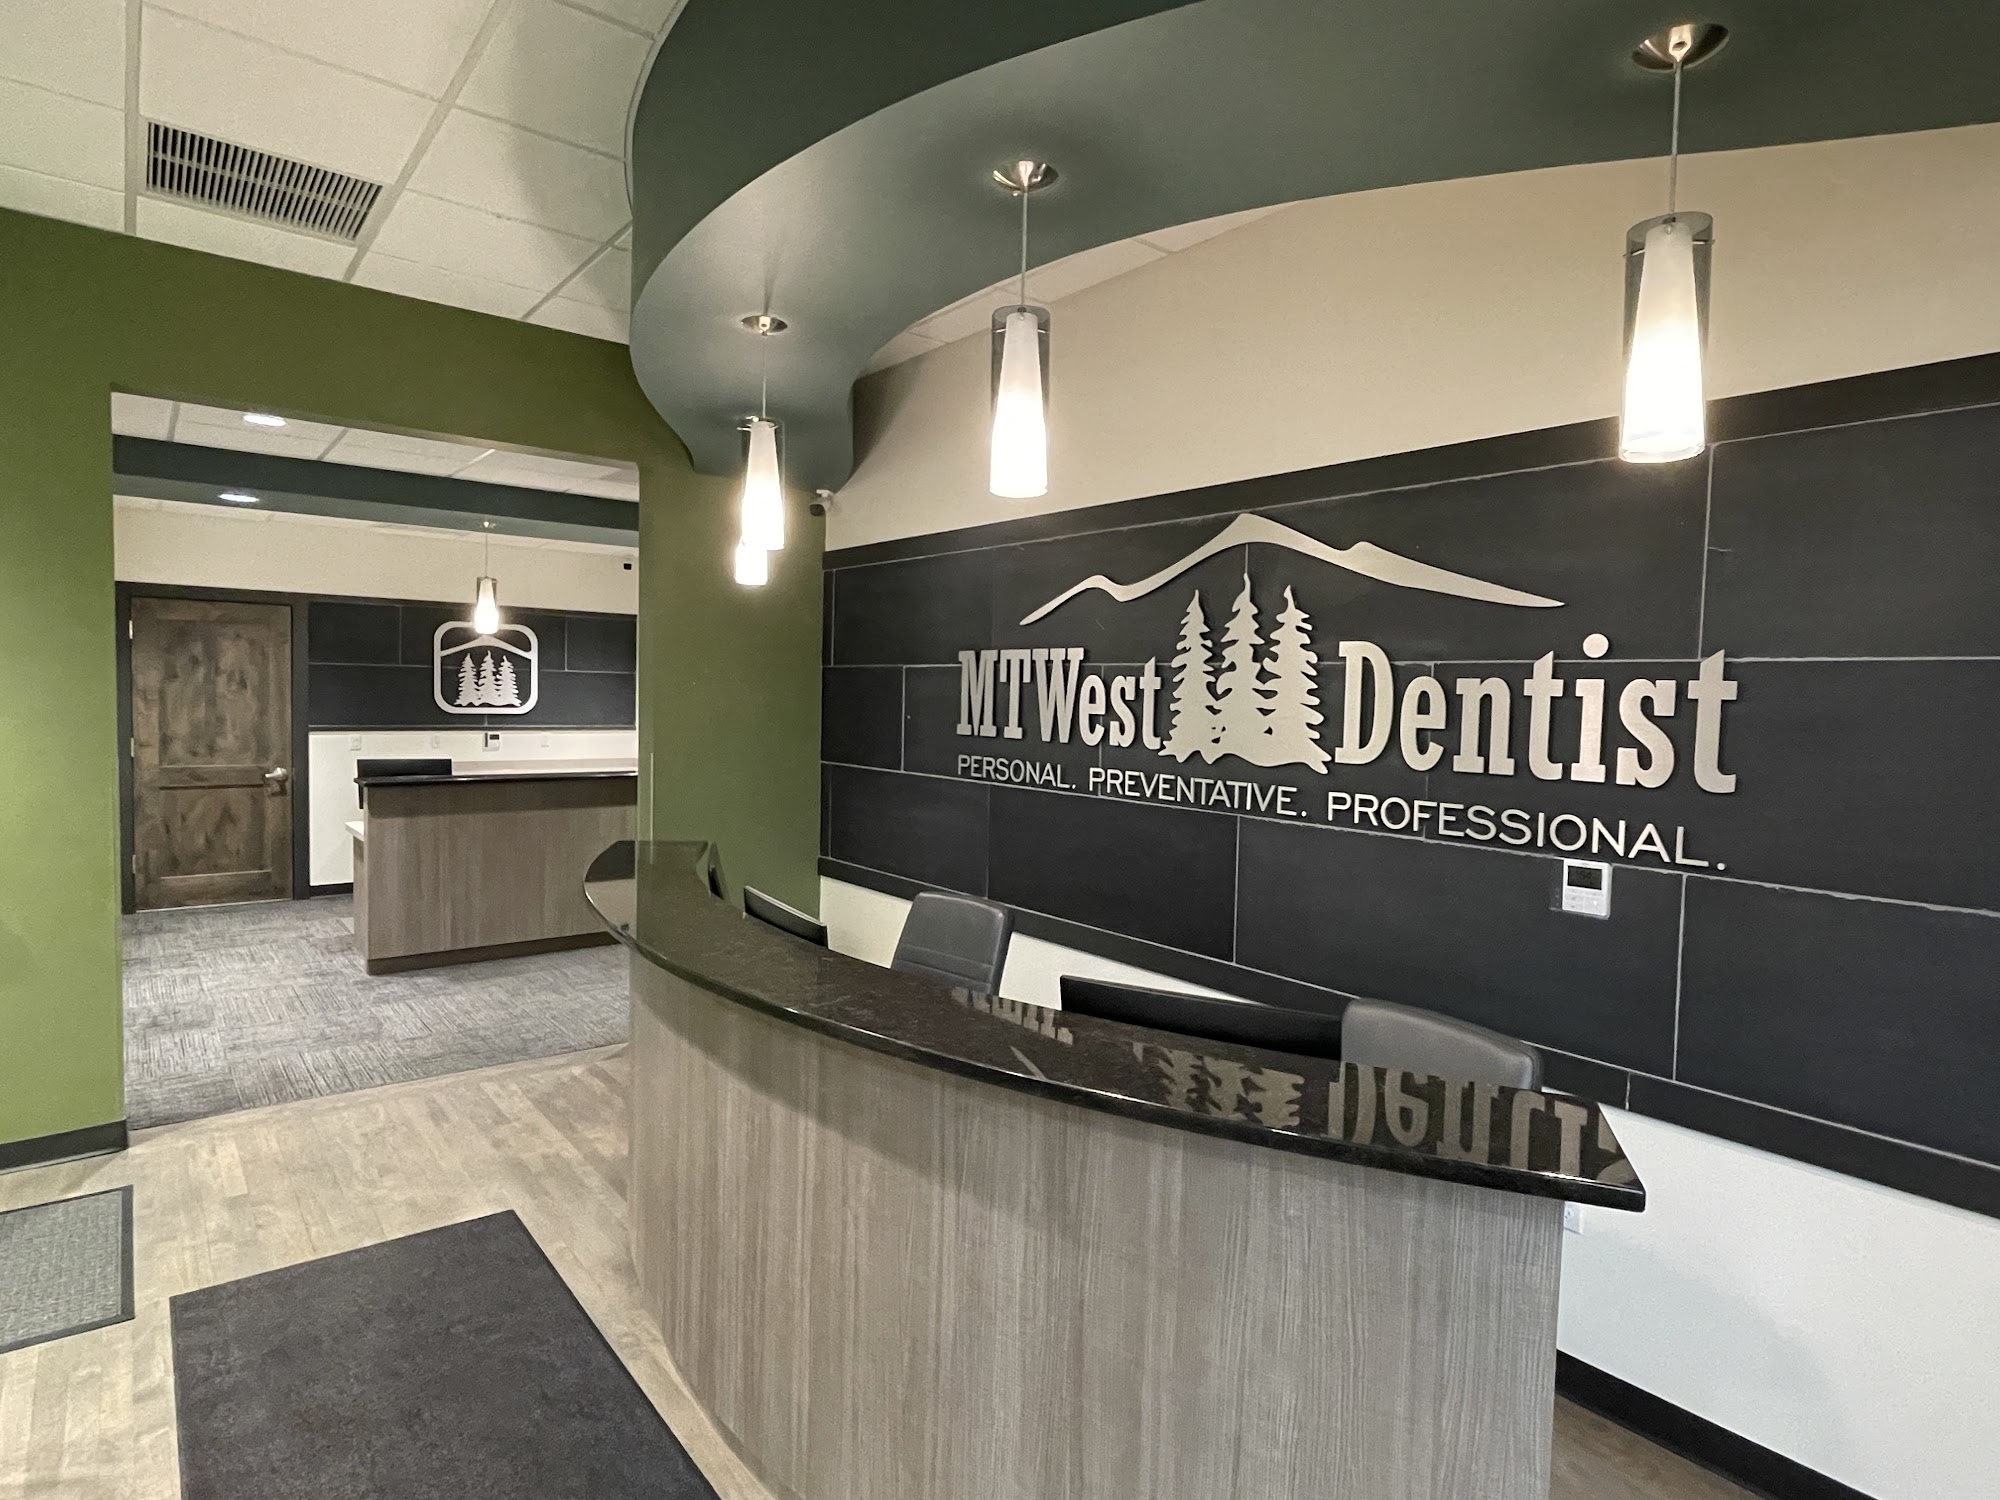 MT West Dentist 200 W Railroad Ave, Plains Montana 59859